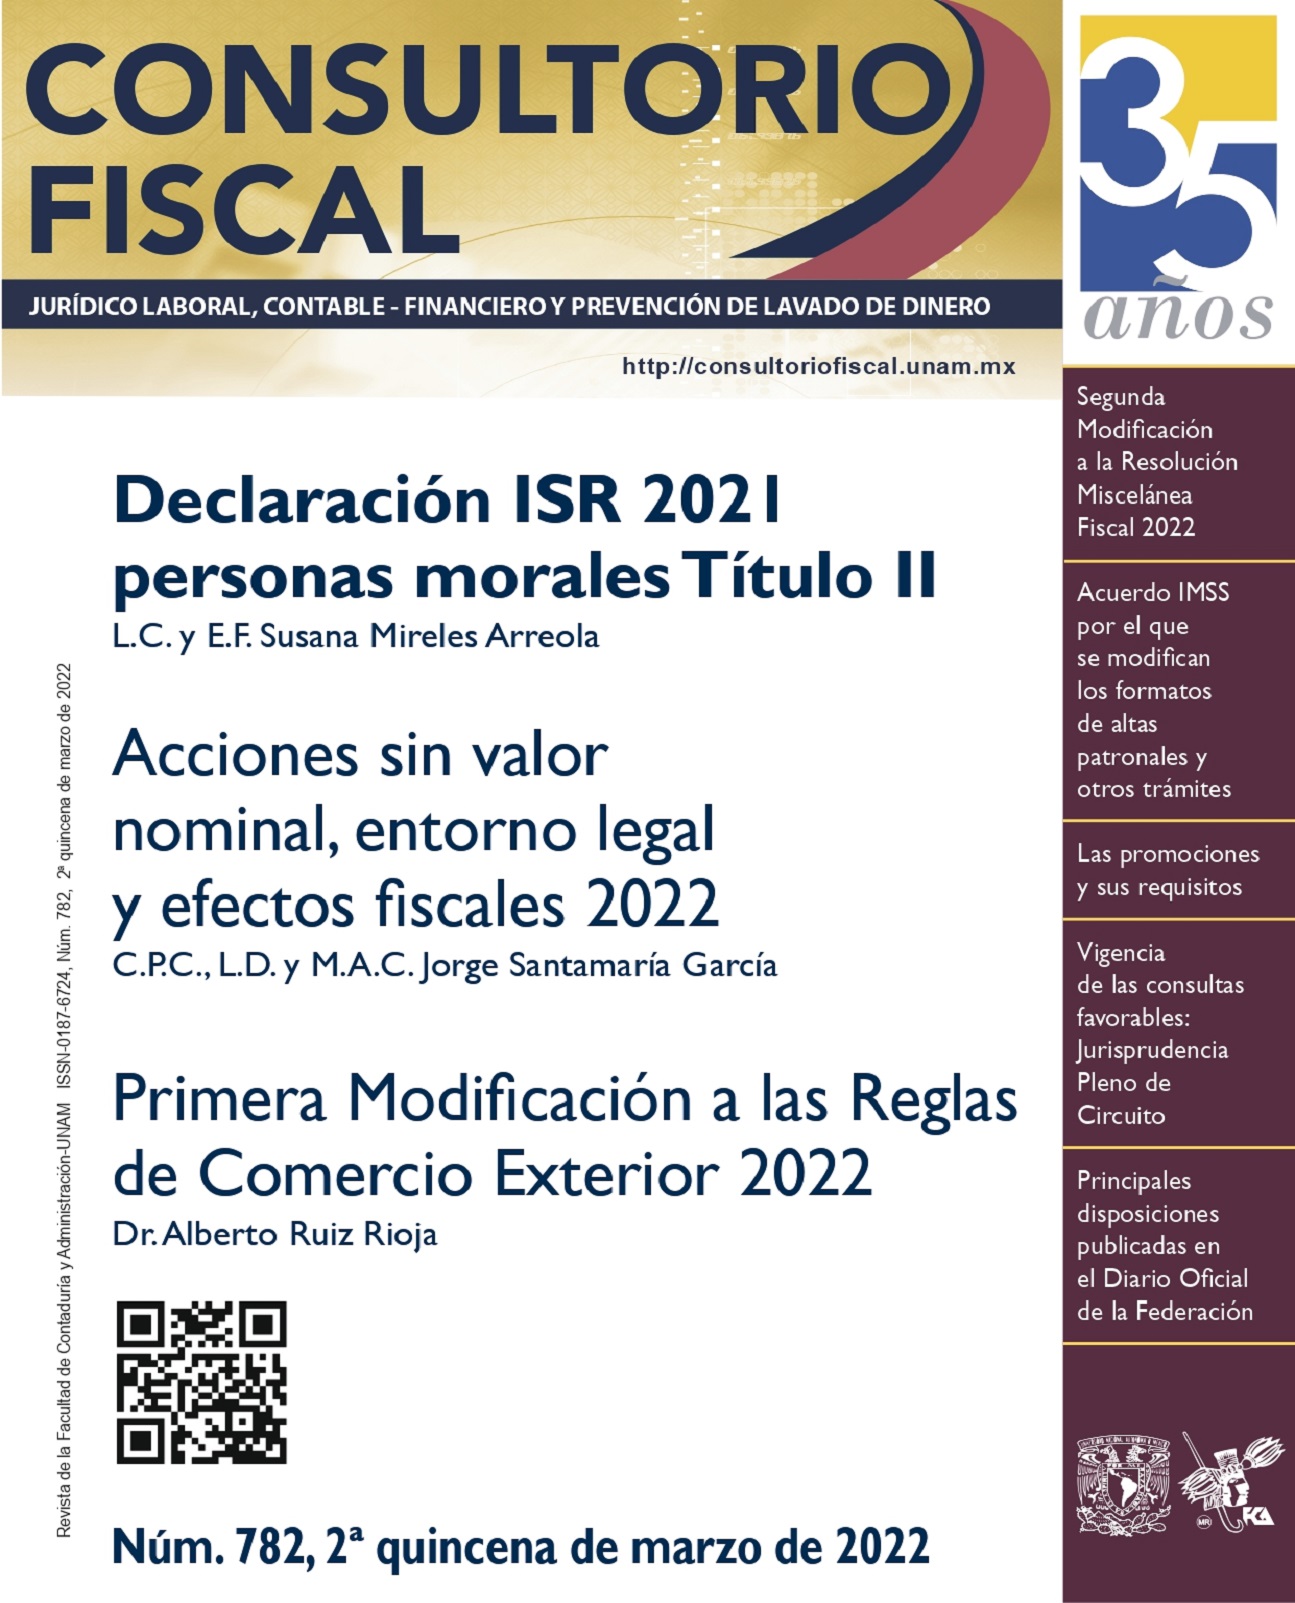 Acciones sin valor nominal, entorno legal y efectos fiscales 2022